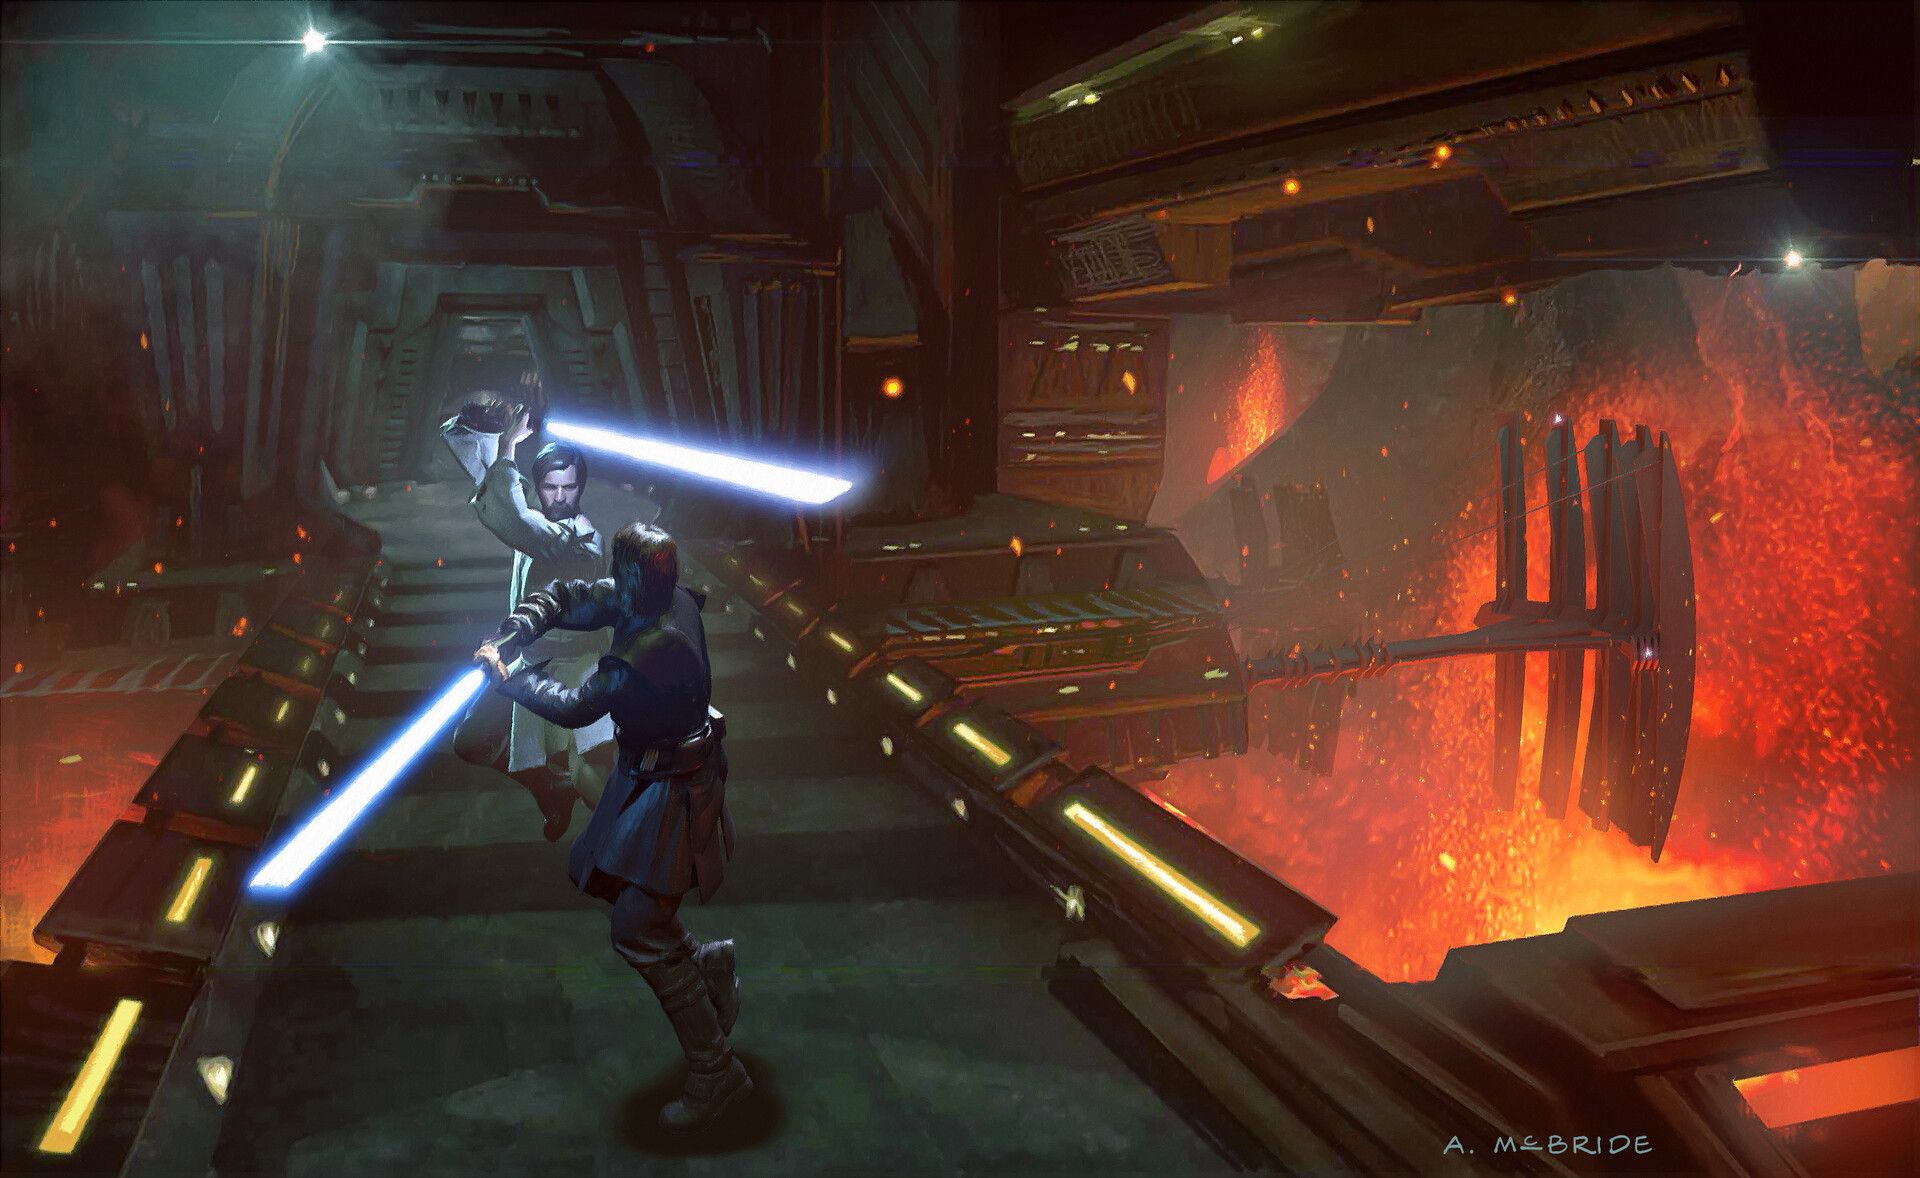 Sci Fi Star Wars Anakin Skywalker Star Wars Episode III Revenge Of The Sith Obi Wan Kenobi HD Wallpaper Background Image